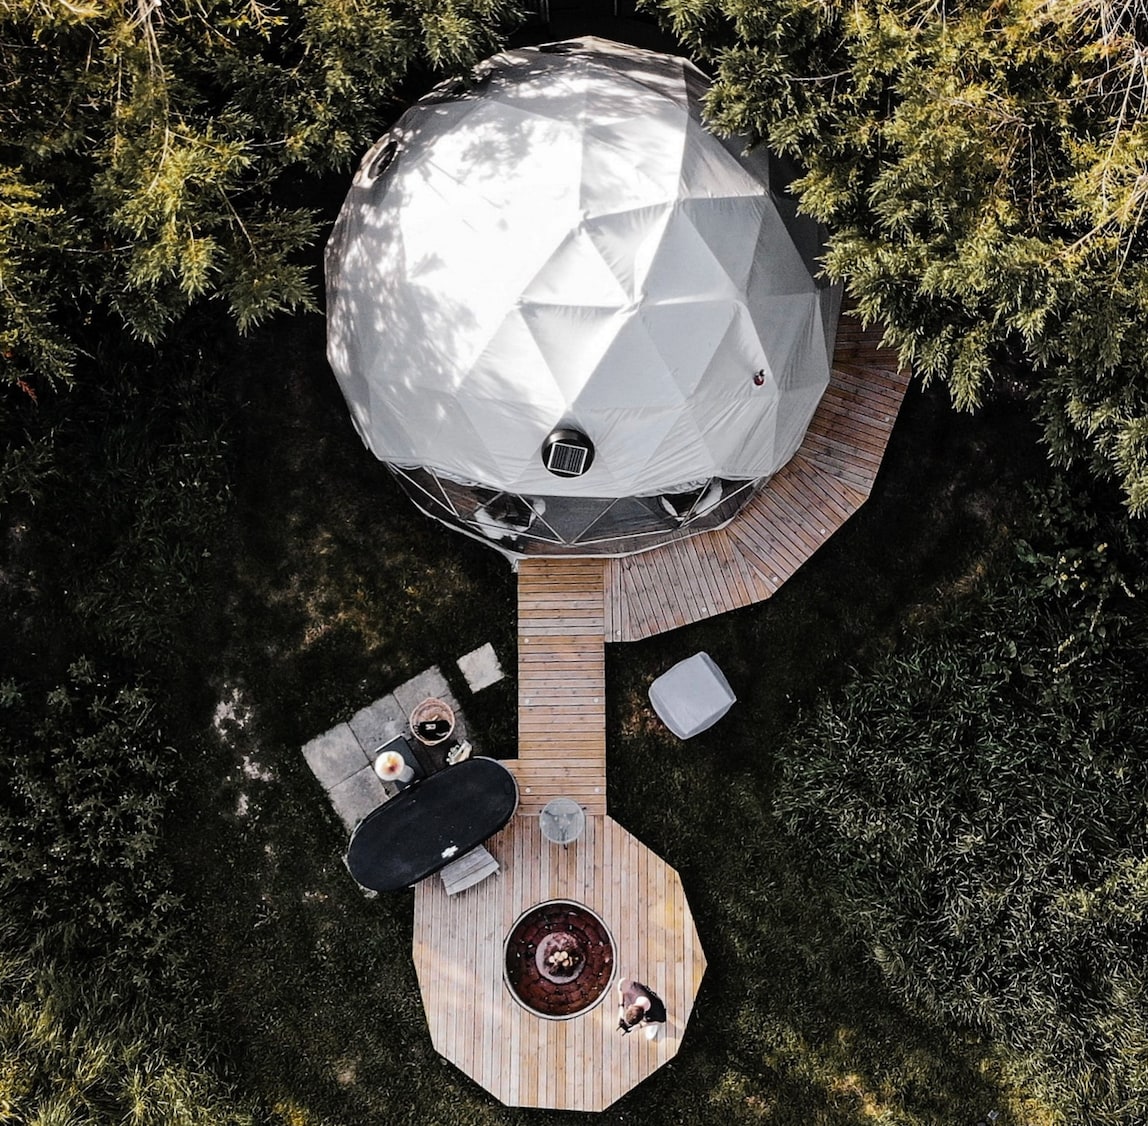 Private Unique Dome | Glamping | Hot Tub | Surrey